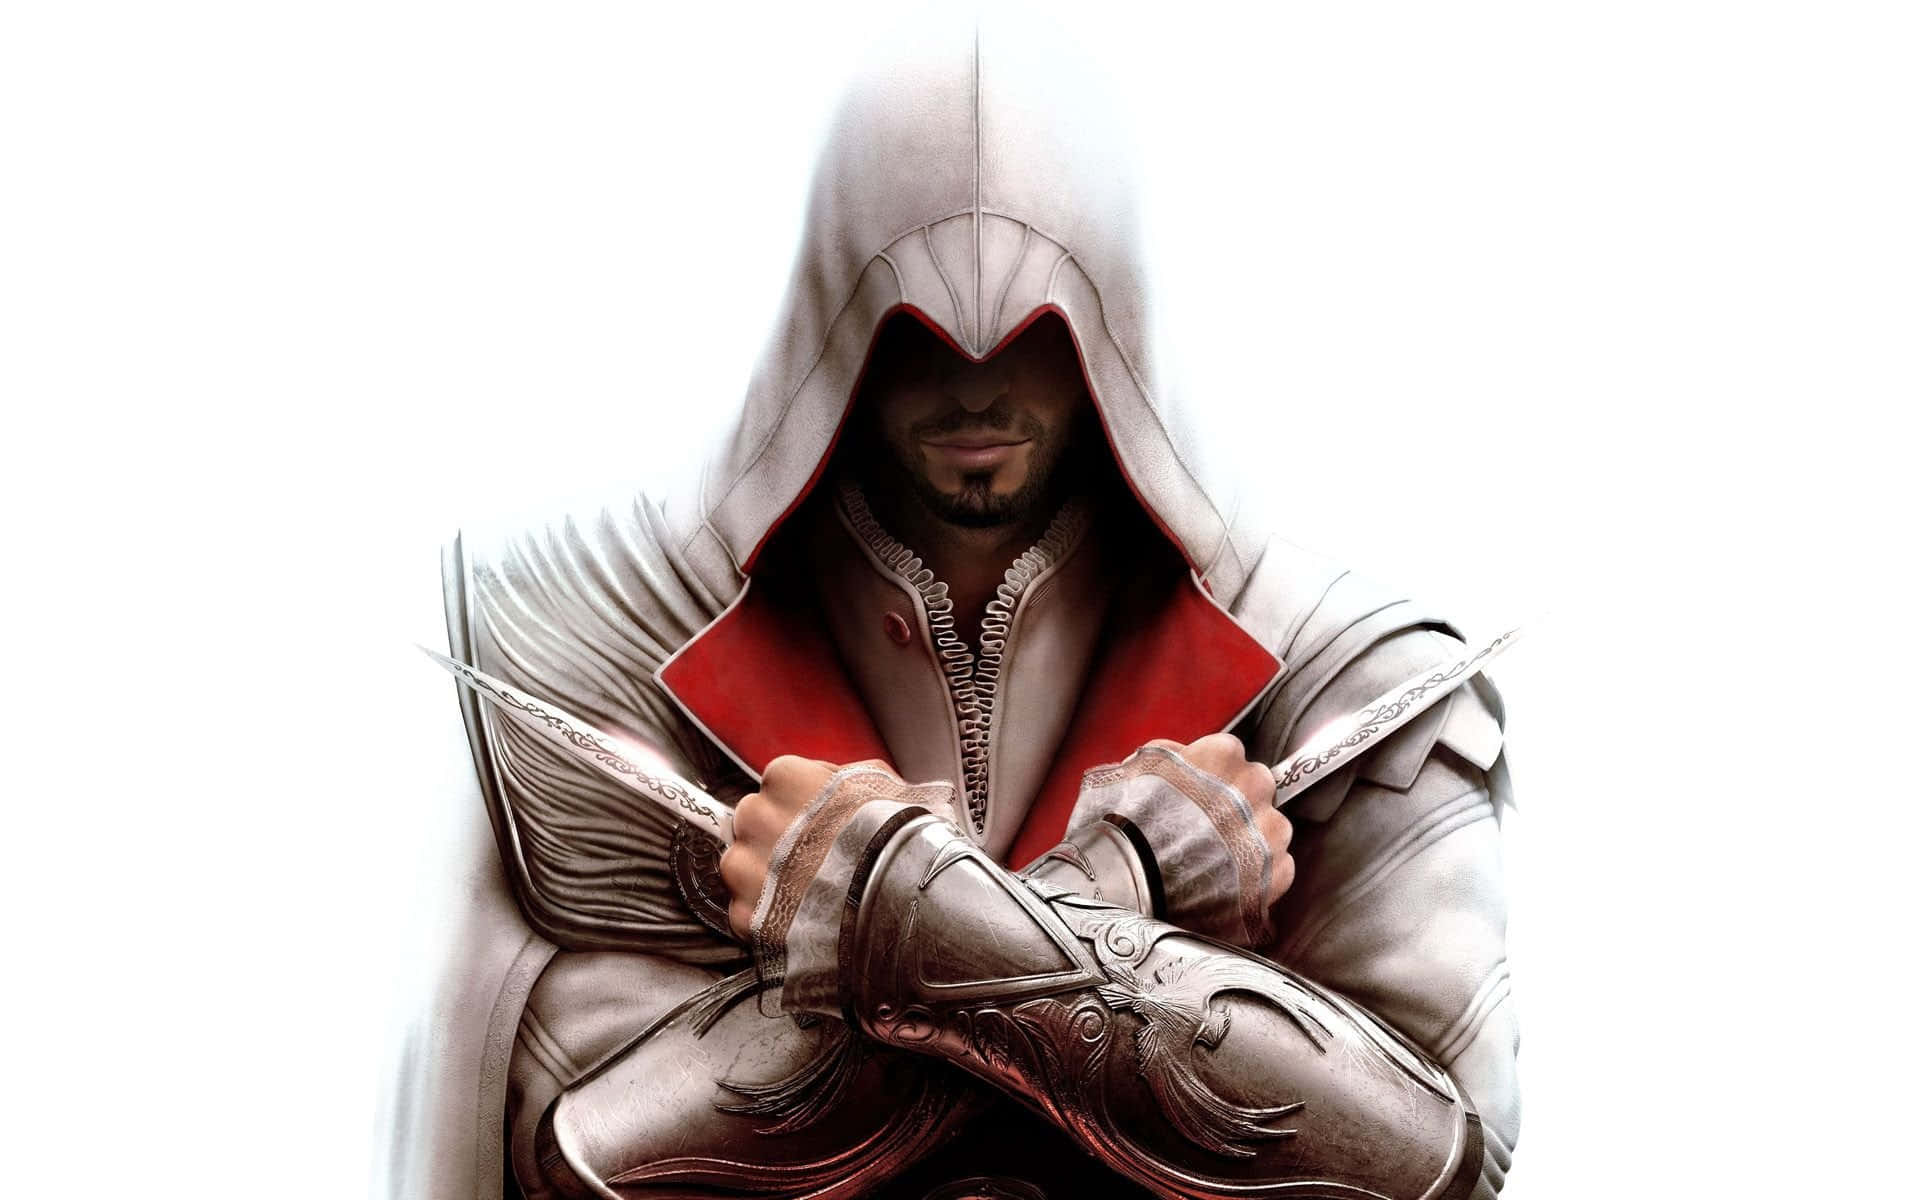 "Ezio Auditore Da Firenze in Action - Assassin's Creed" Wallpaper